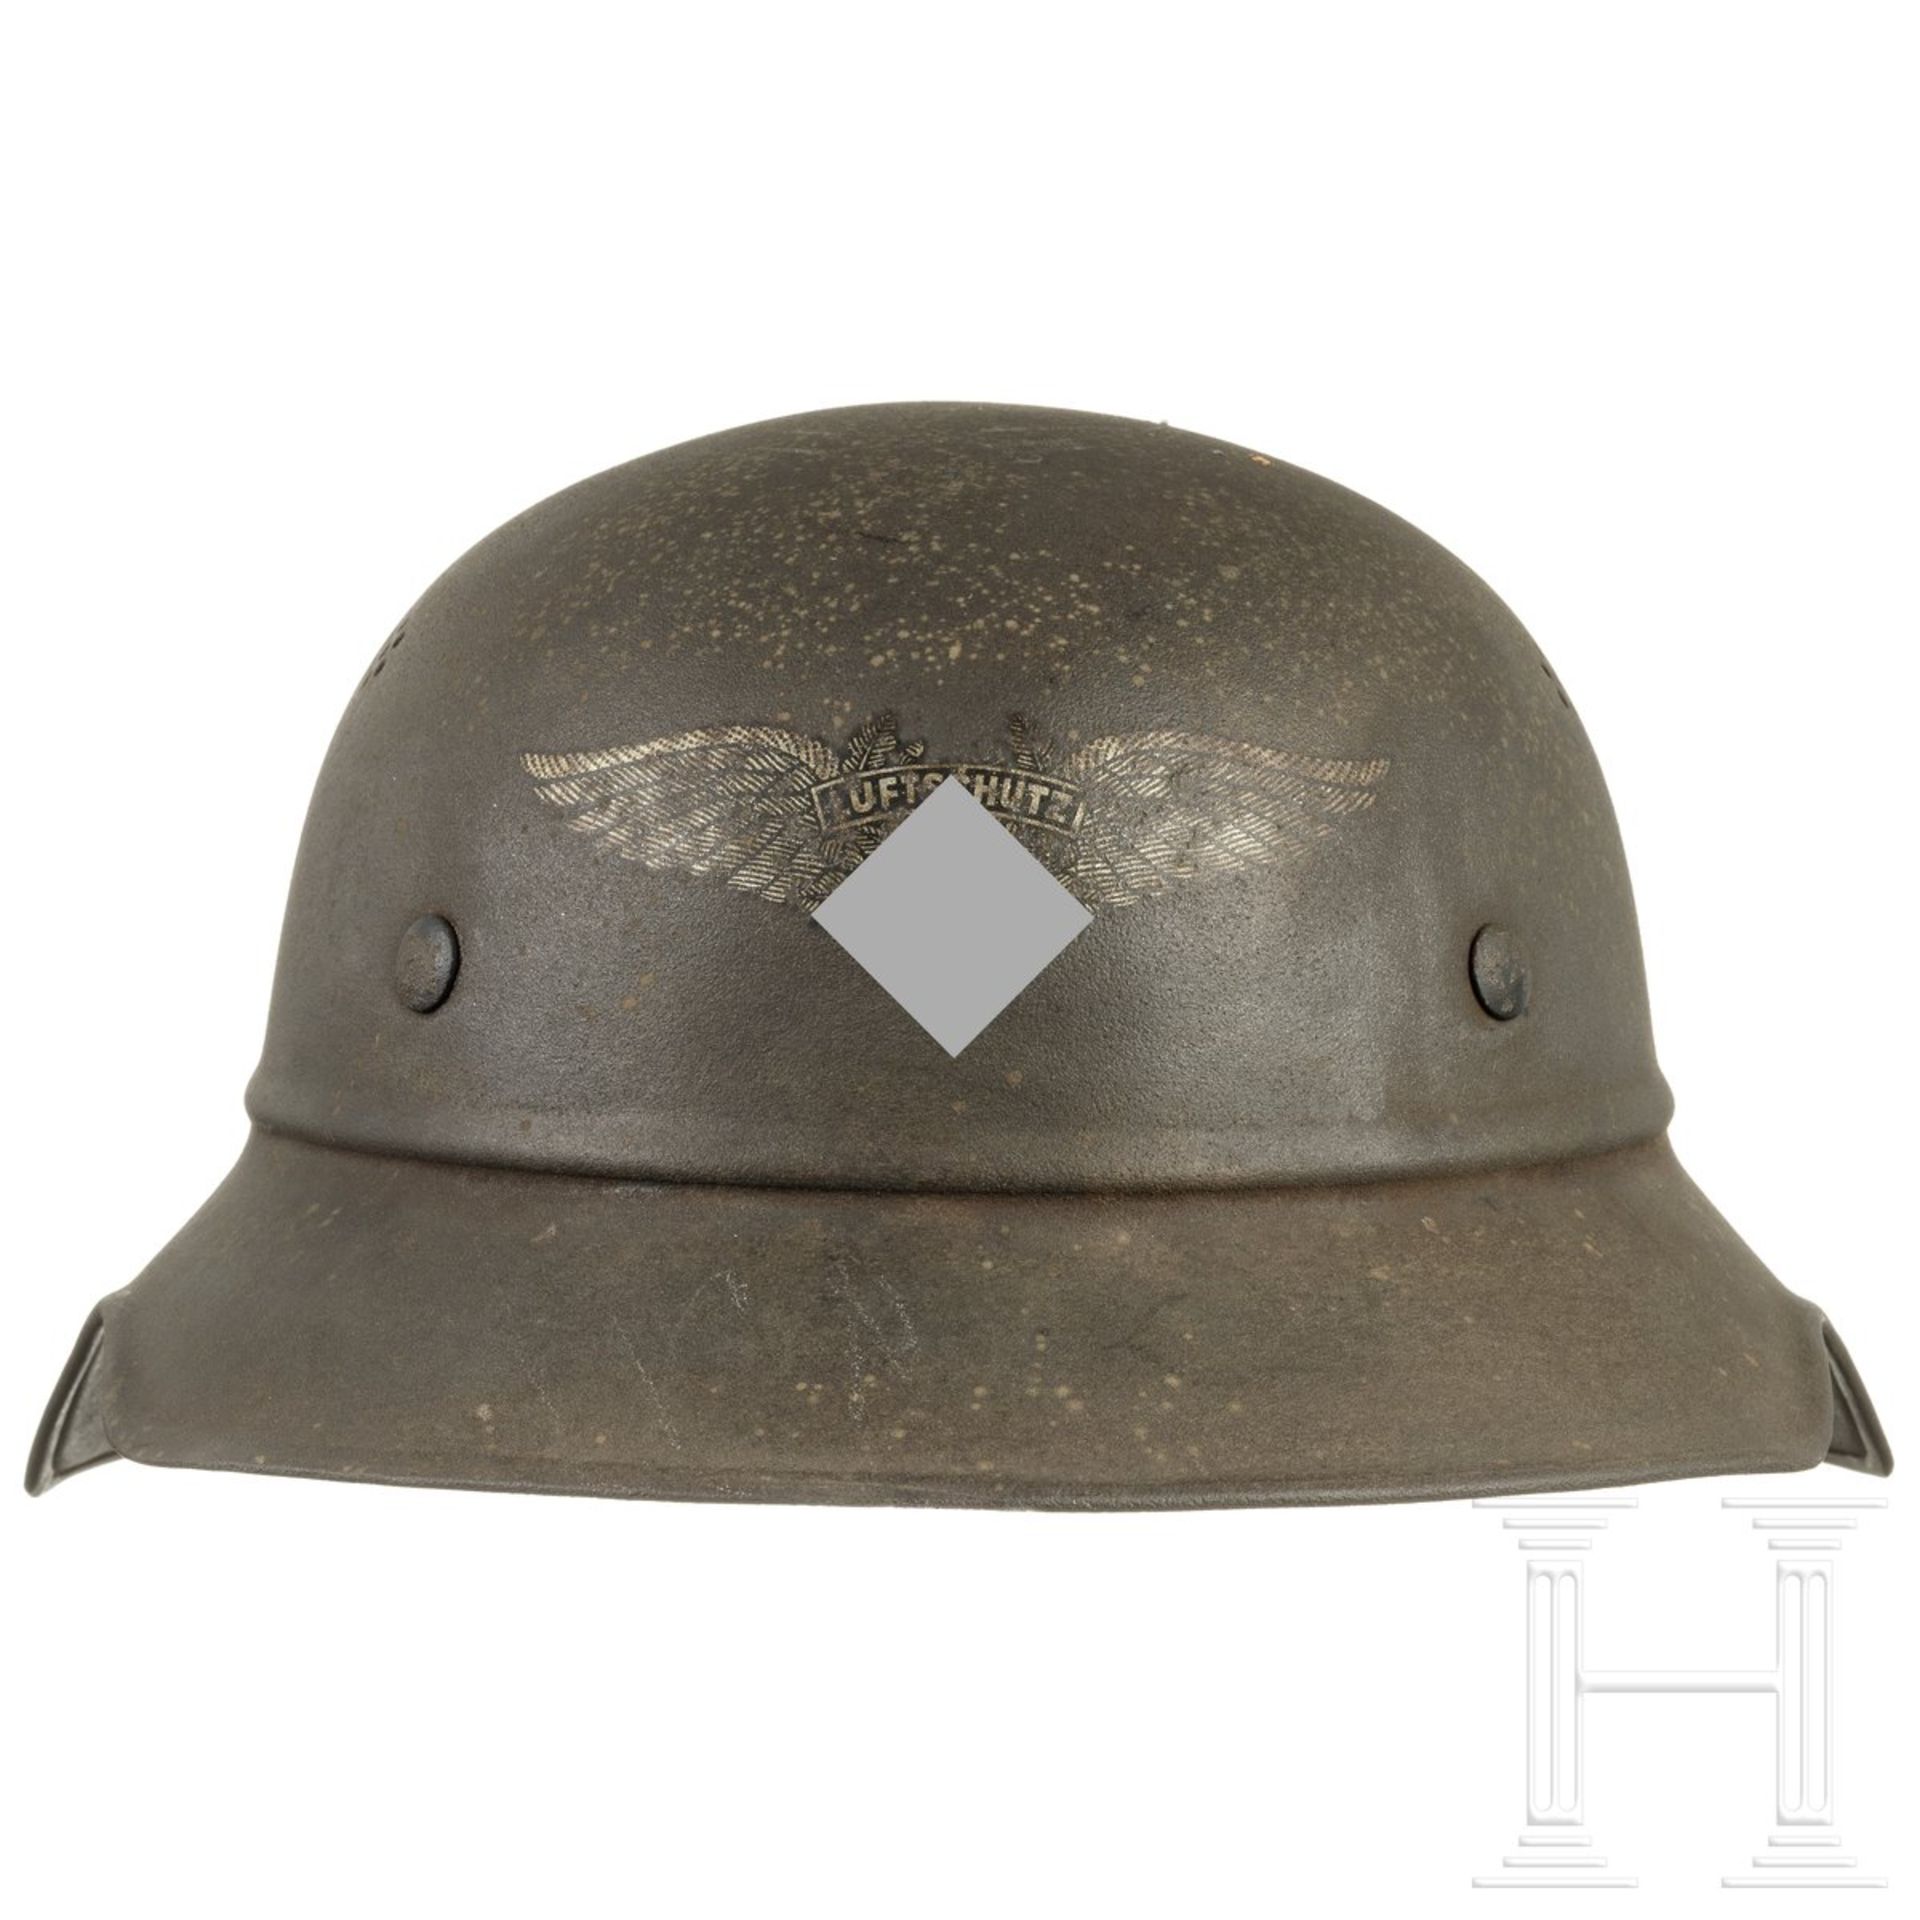 Stahlhelm "Gladiator" für Luftschutz, deutsch, um 1940 - Bild 3 aus 5